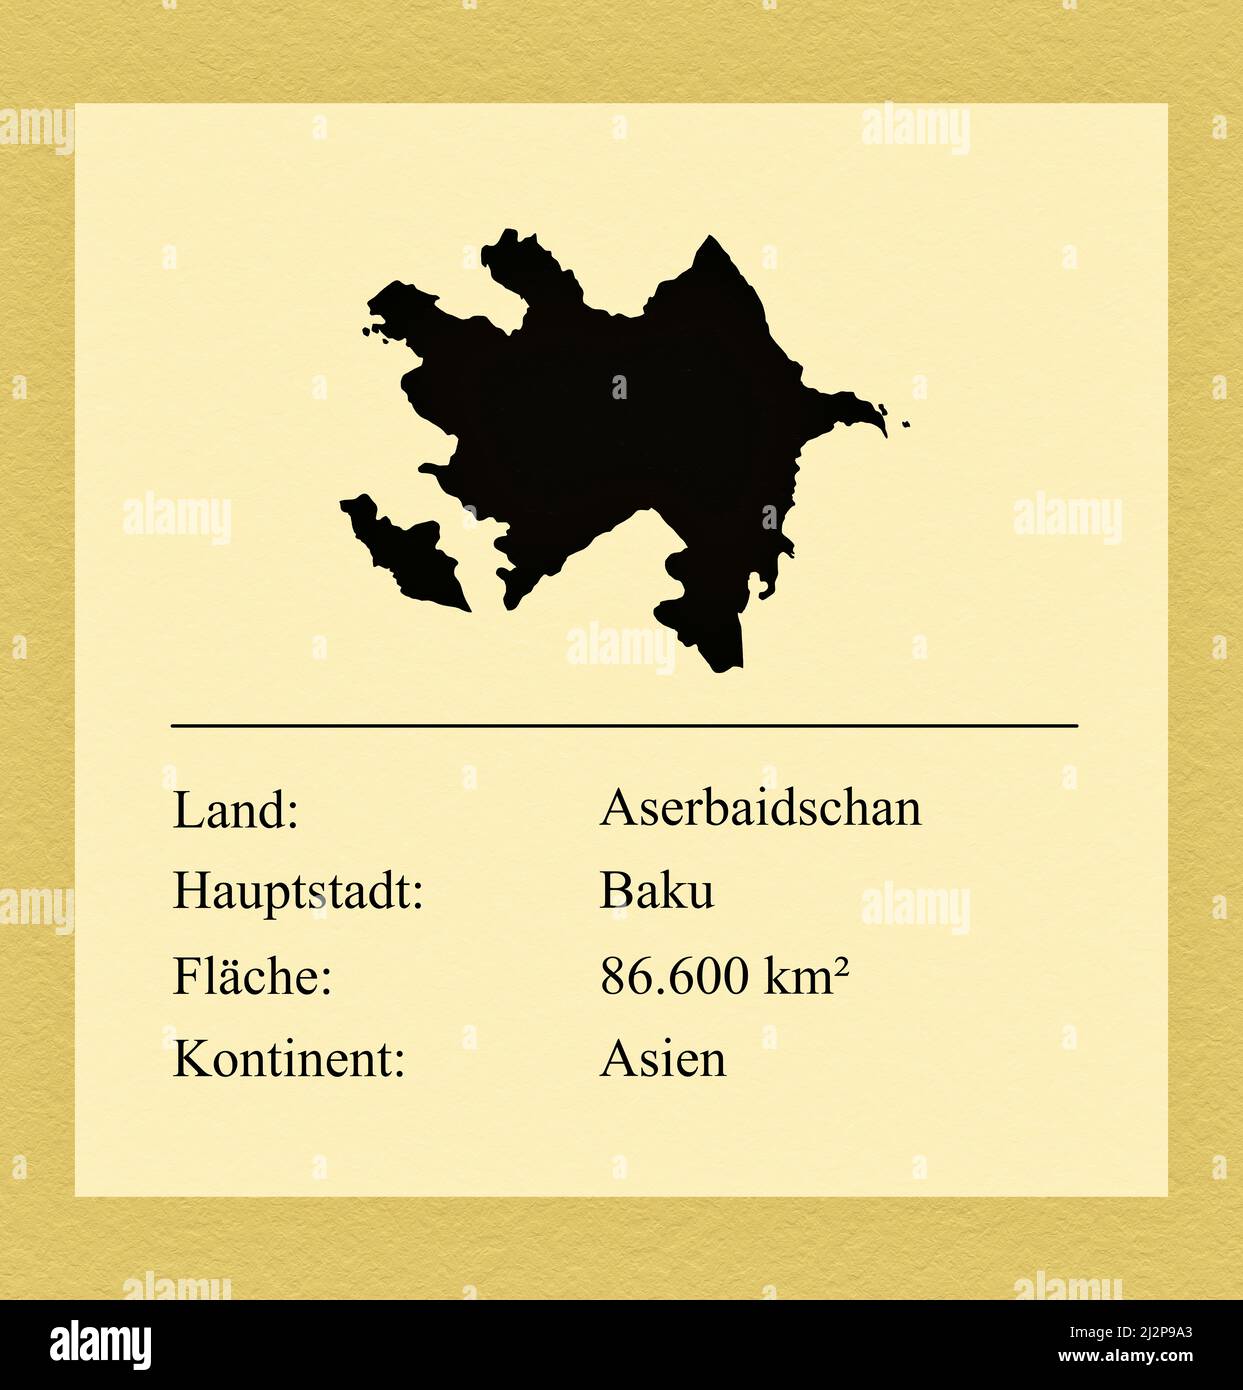 Umrisse des Landes Aserbaidschan, darunter ein kleiner Steckbrief mit Ländernamen, Hauptstadt, Fläche und Kontinent Stock Photo